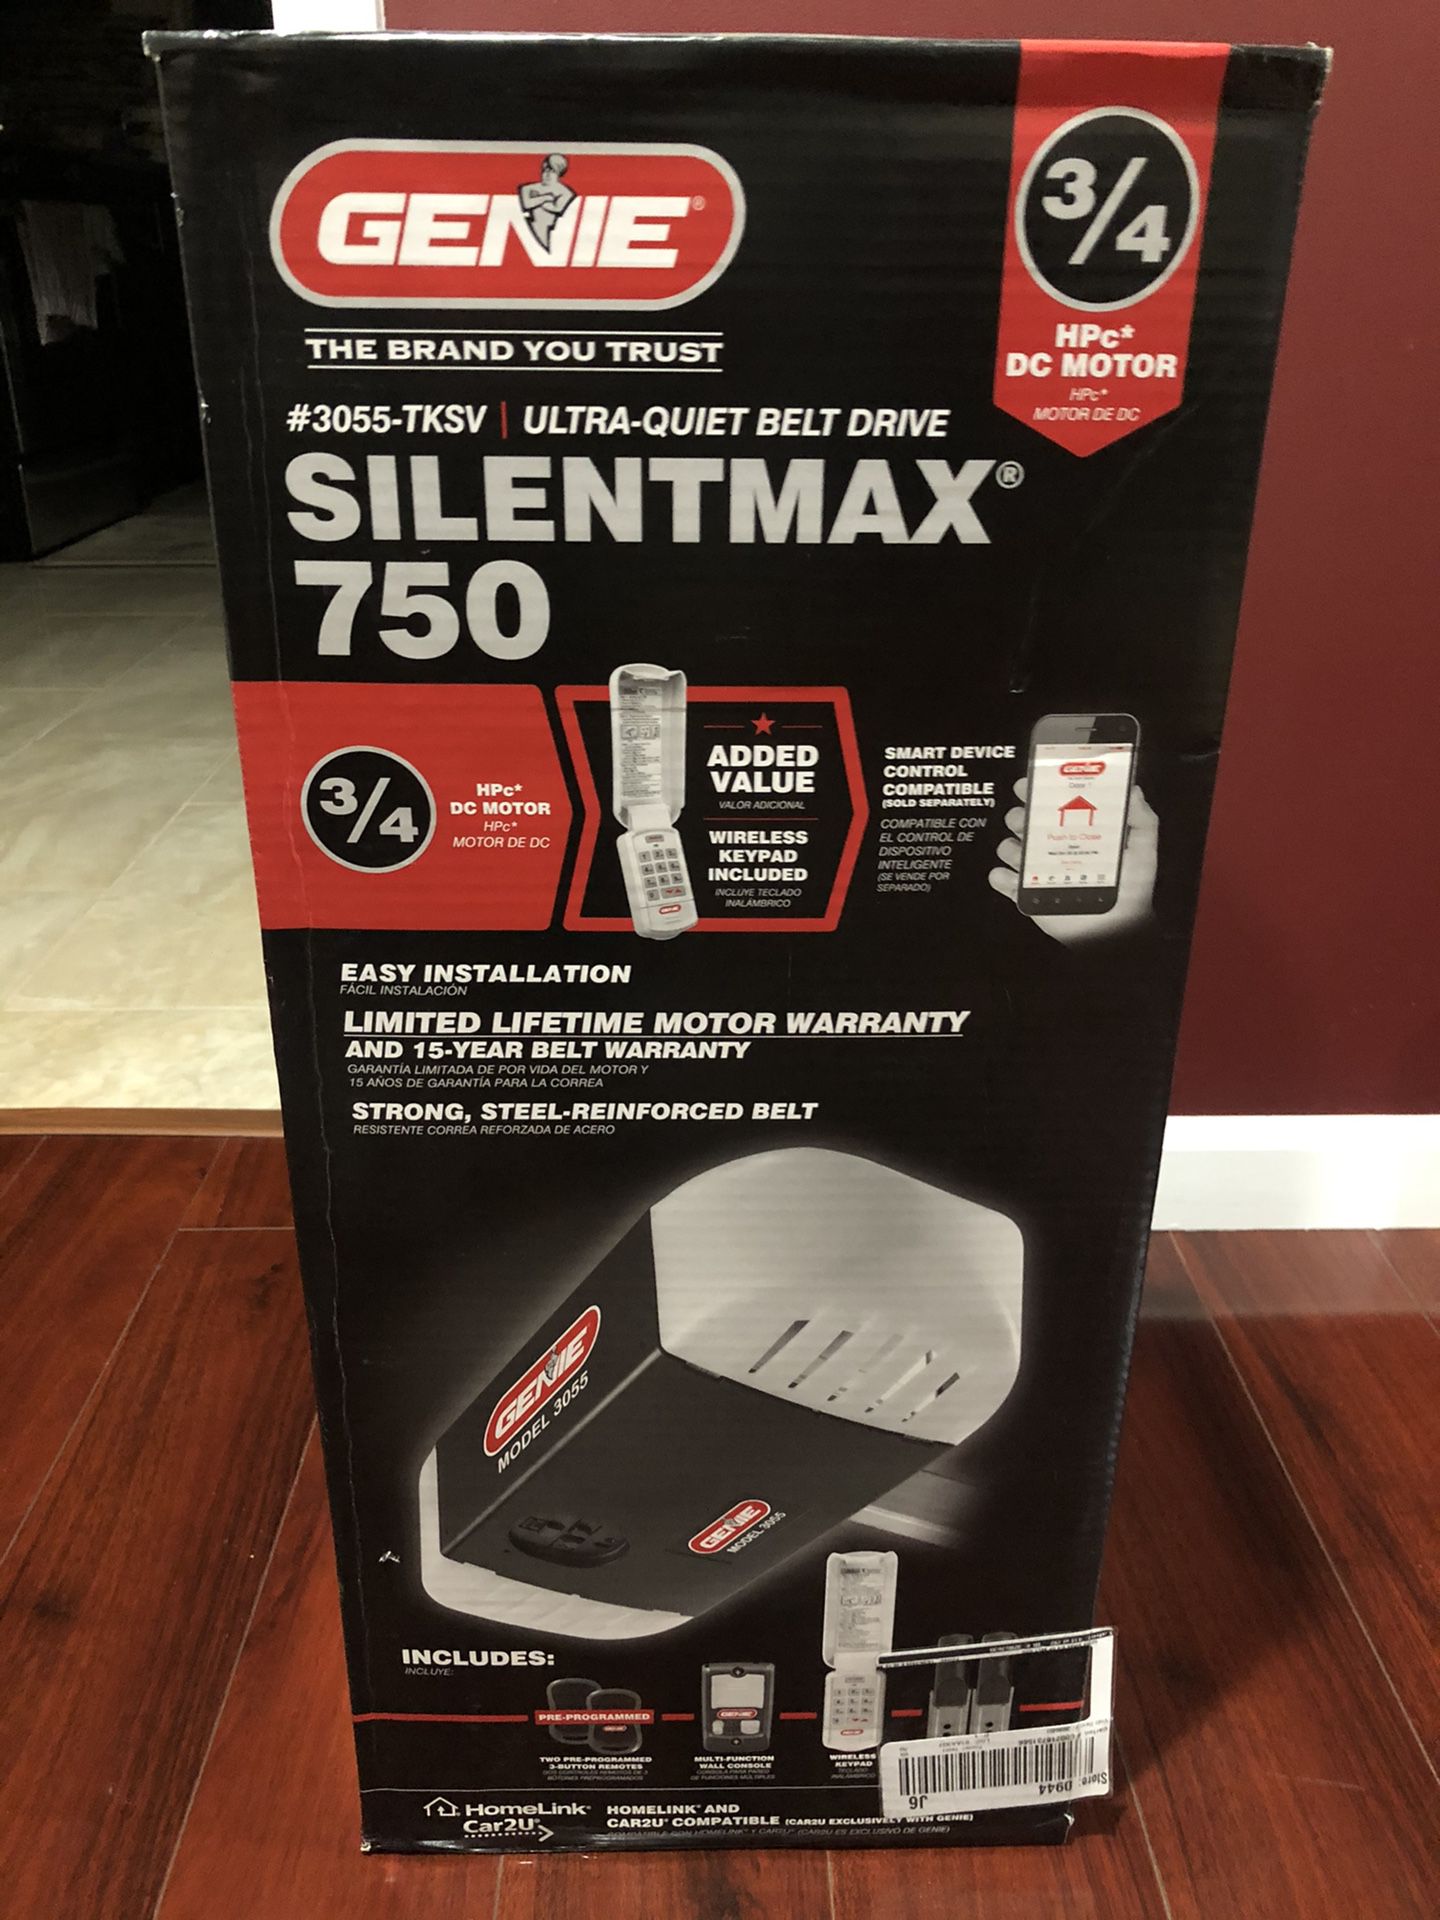 Genie Silentmax 750 Smart Garage Door Opener!